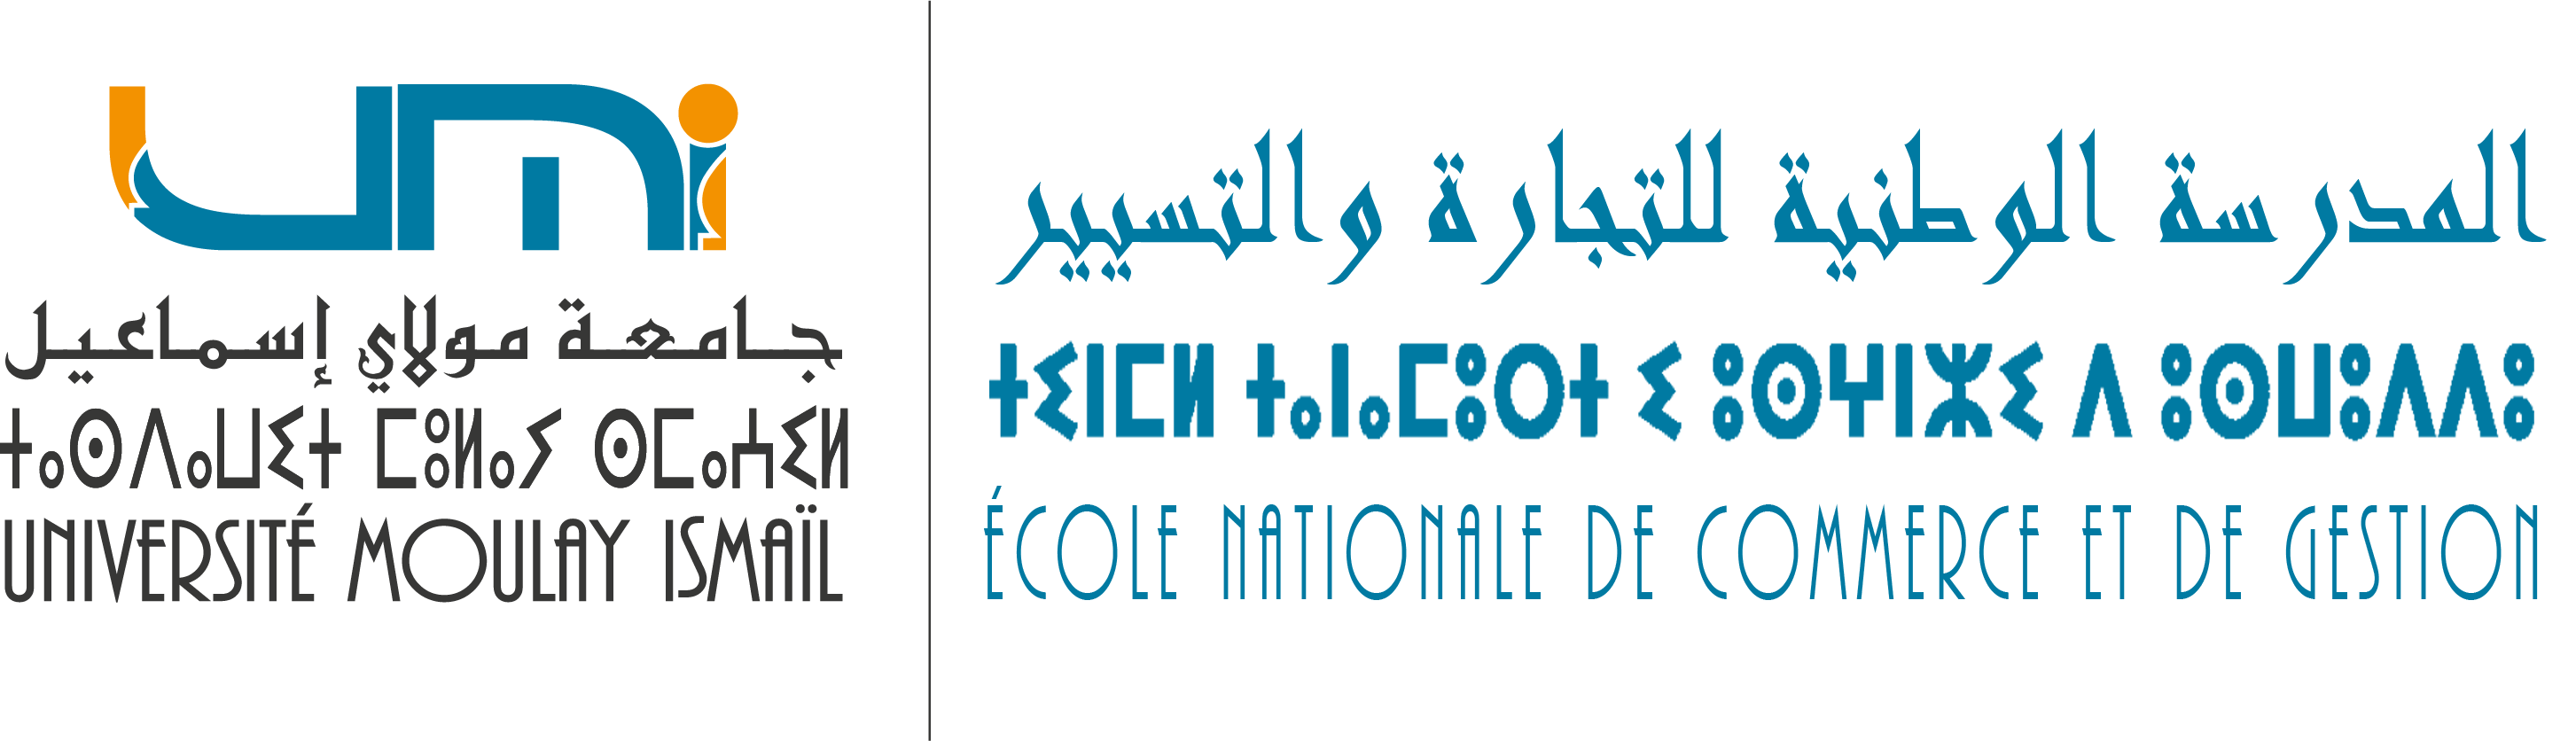 Revue Marocaine de Gestion et de Société | Ecole Nationale de Commerce et de Gestion ::ENCG::  المدرسة الوطنية للتجارة و التسيير